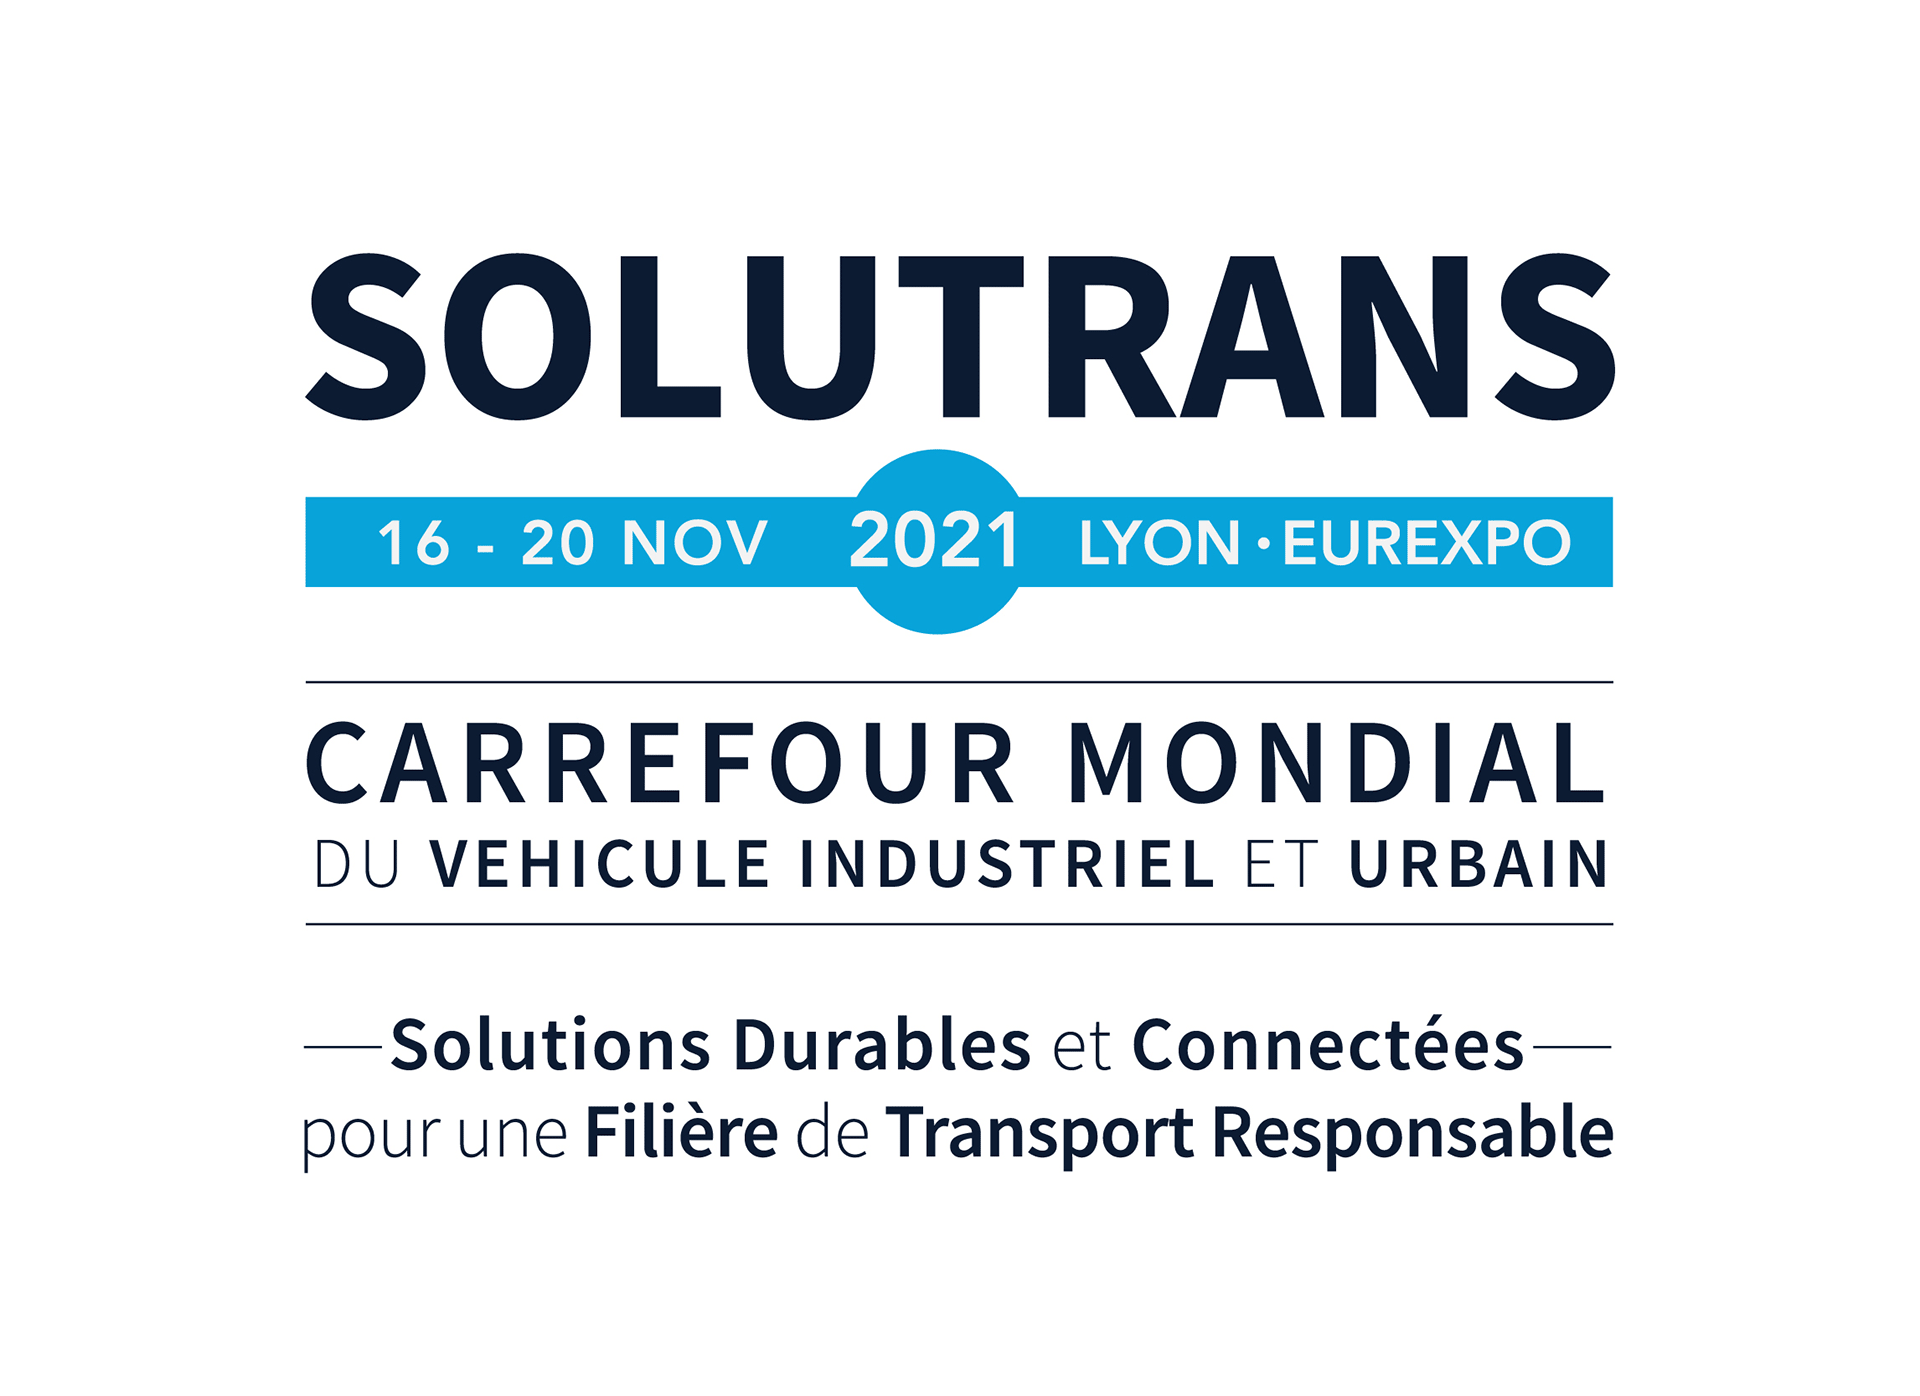 Voir l'événement Venez rencontrer notre experte de l’Aderly à Solutrans 2021, salon mondial du véhicule industriel et urbain